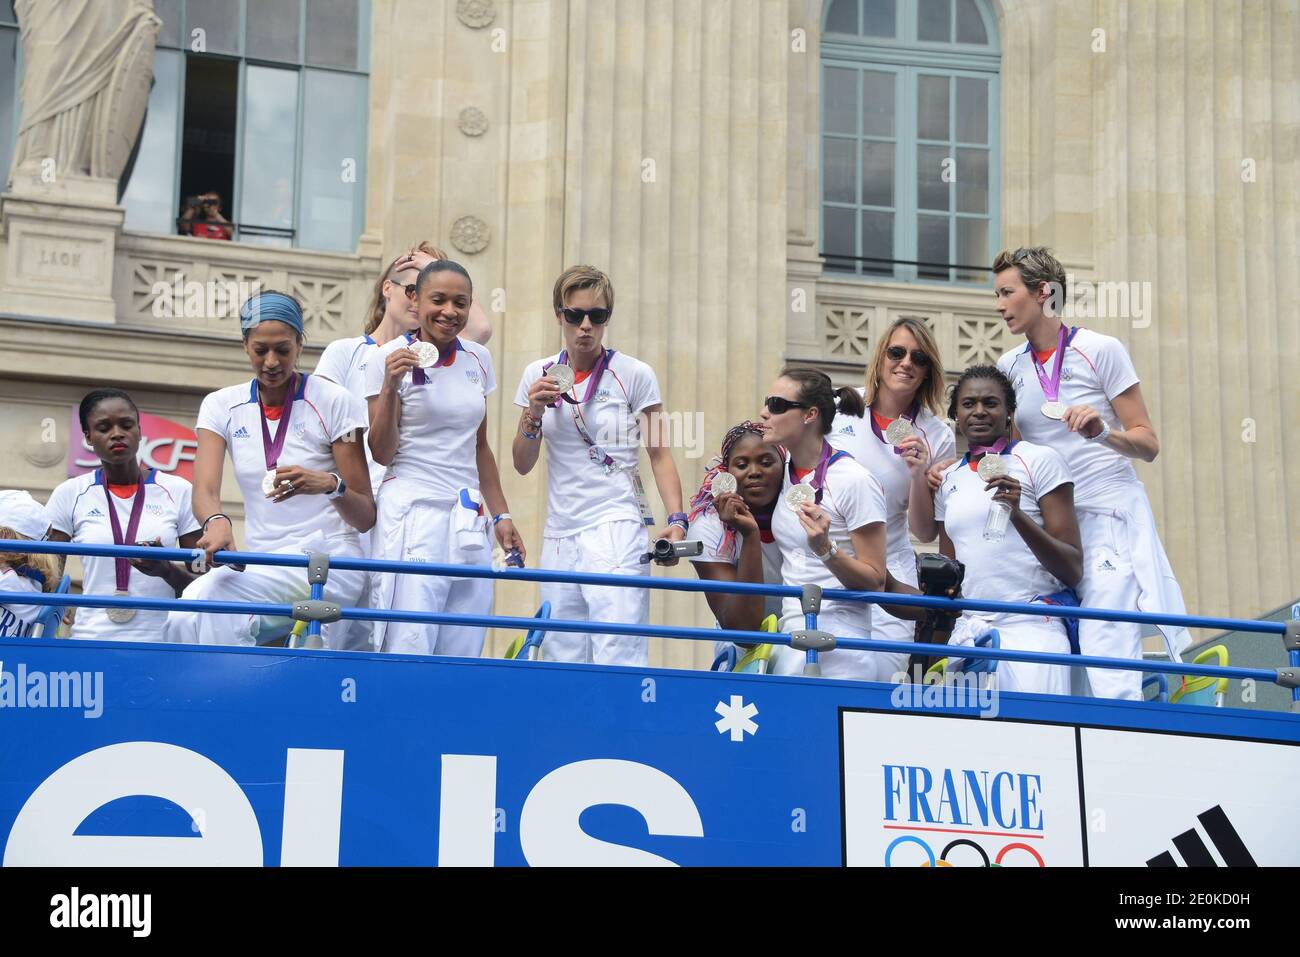 Frankreich Basketball-Team während der französischen Athleten Parade nach den Olympischen Spielen 2012 in London. Sie ziehen durch Paris, um mit ihren Fans zu feiern, nachdem sie am 13. August 2012 in Paris die Medaille für die Olympischen Spiele gewonnen haben. Foto von Nicolas Briquet/ABACAPRESS.COM Stockfoto